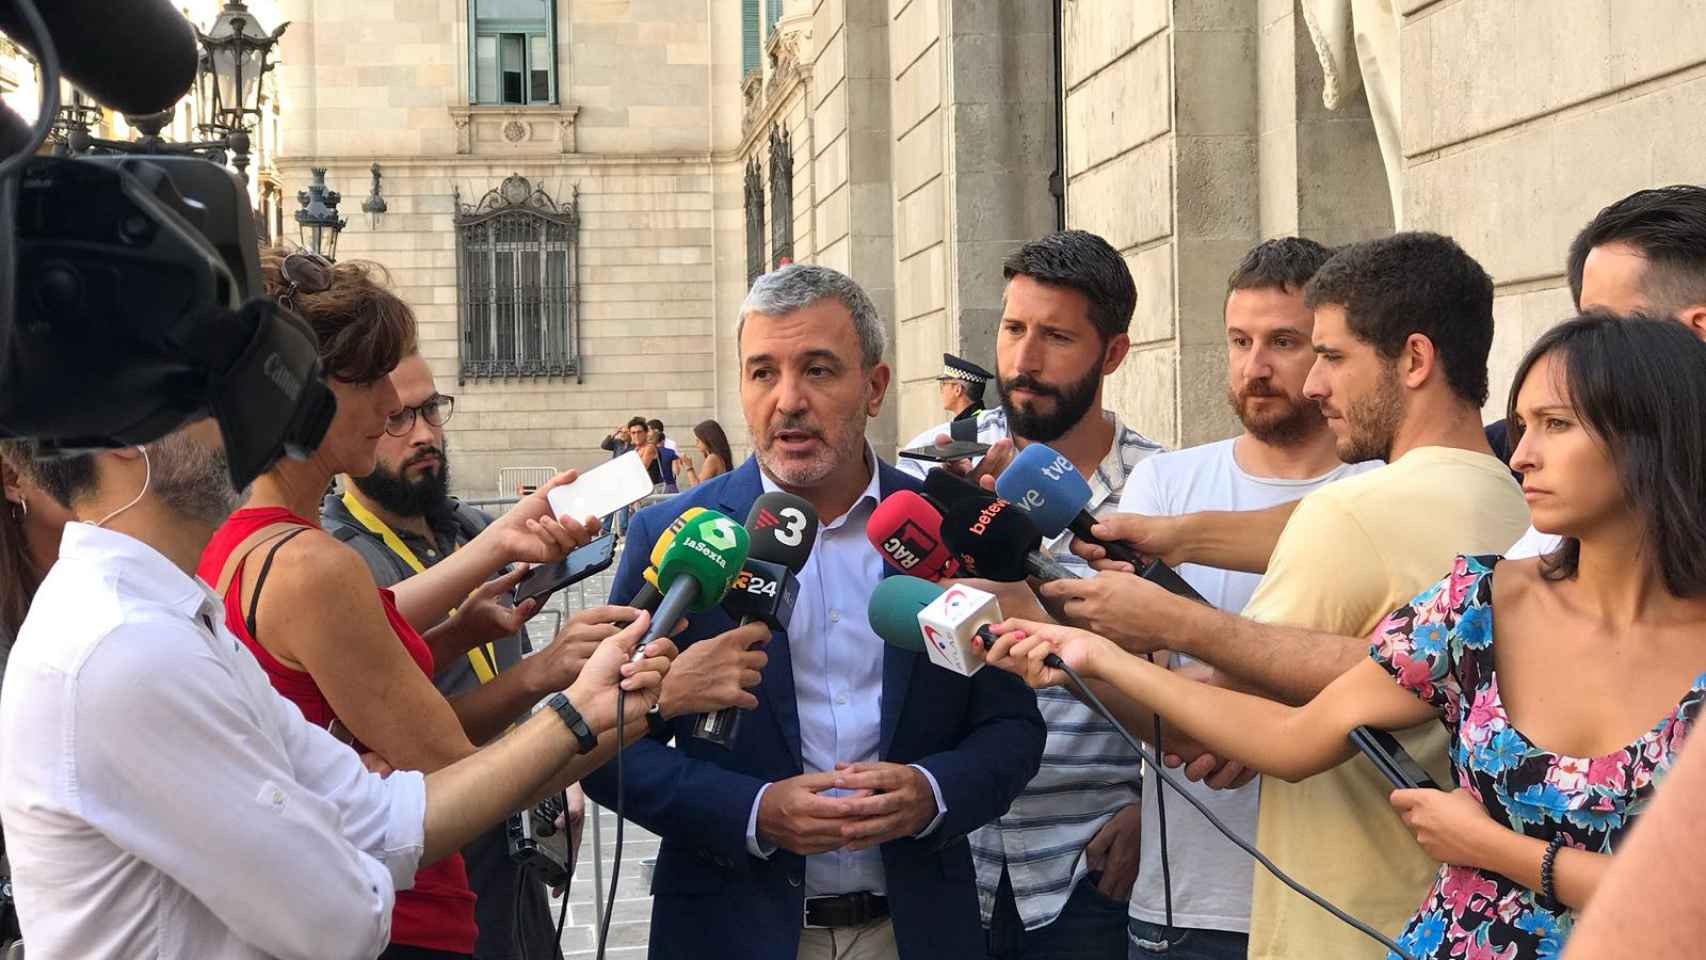 Jaume Collboni en declaraciones a los medios, en plena Plaça Sant Jaume / MIKI